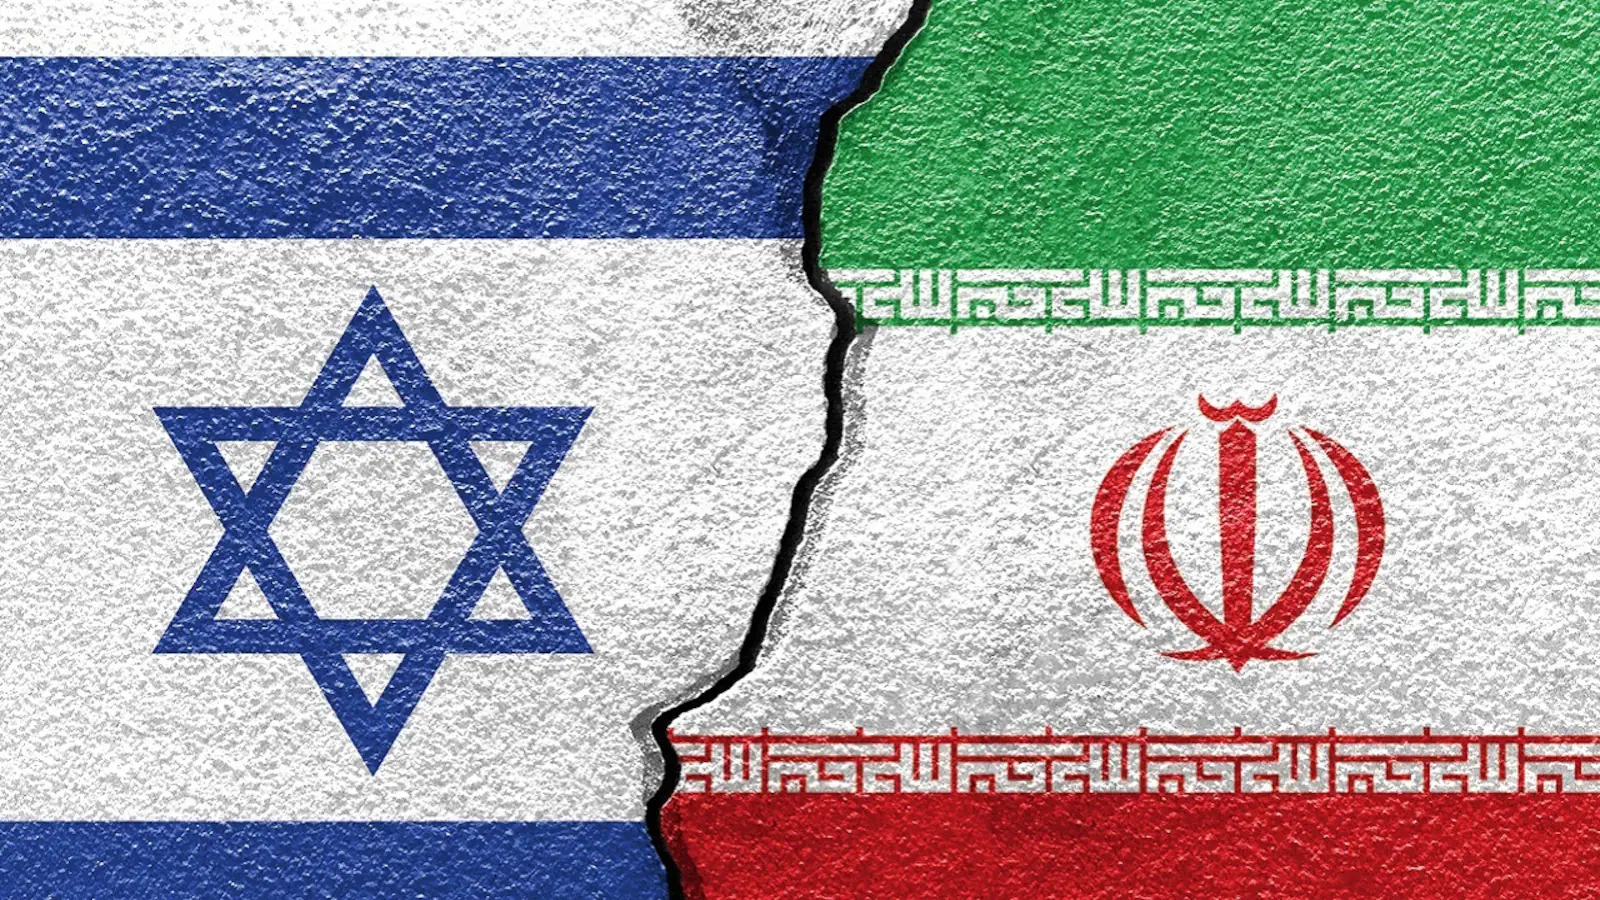 iran israel war